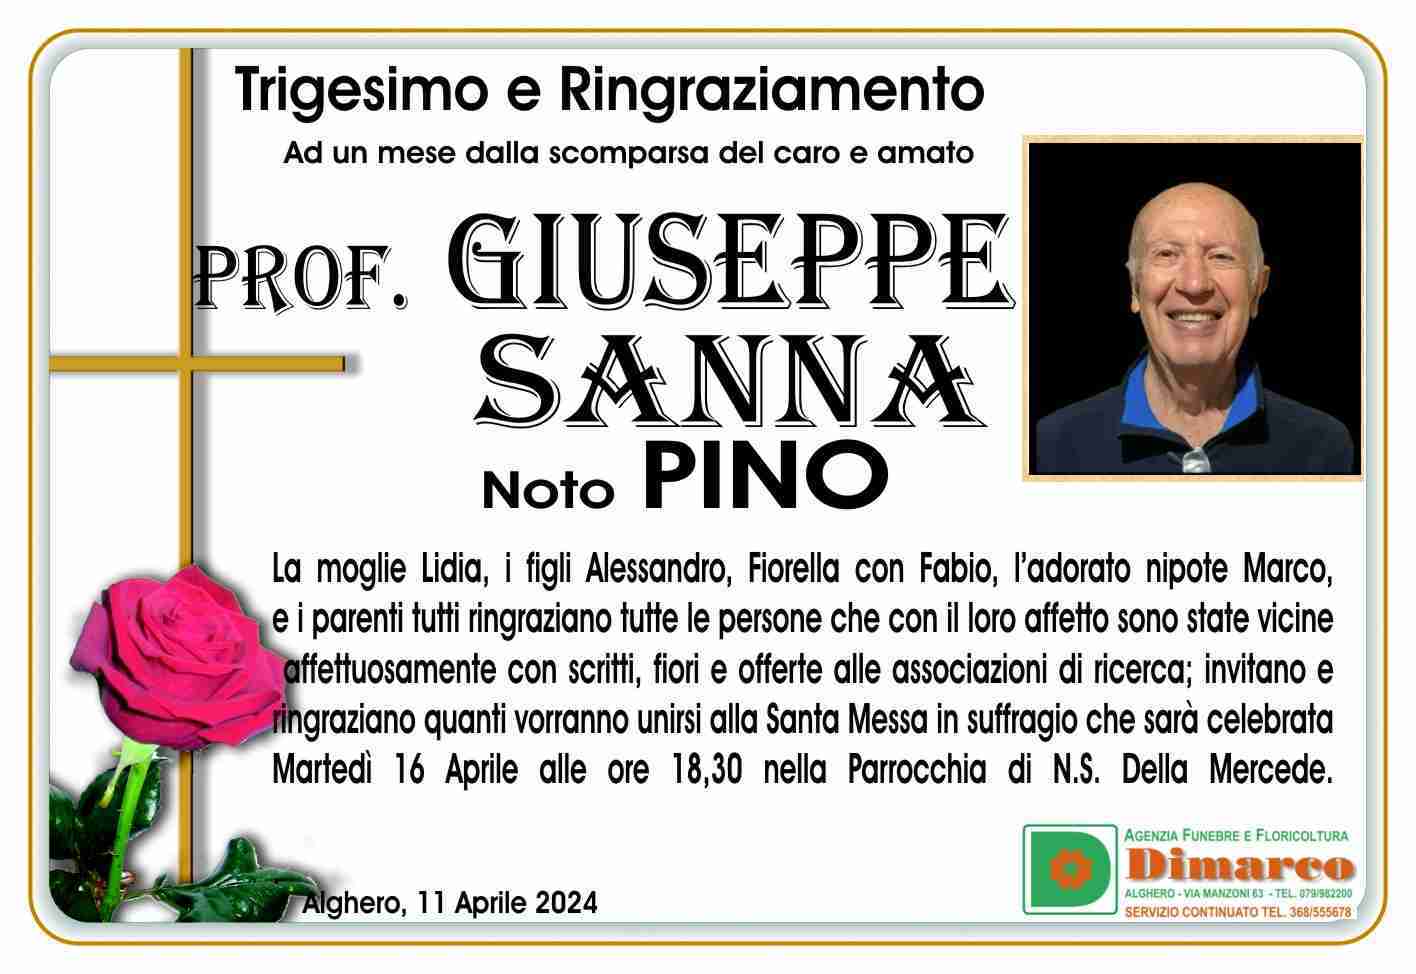 Prof. Giuseppe Sanna